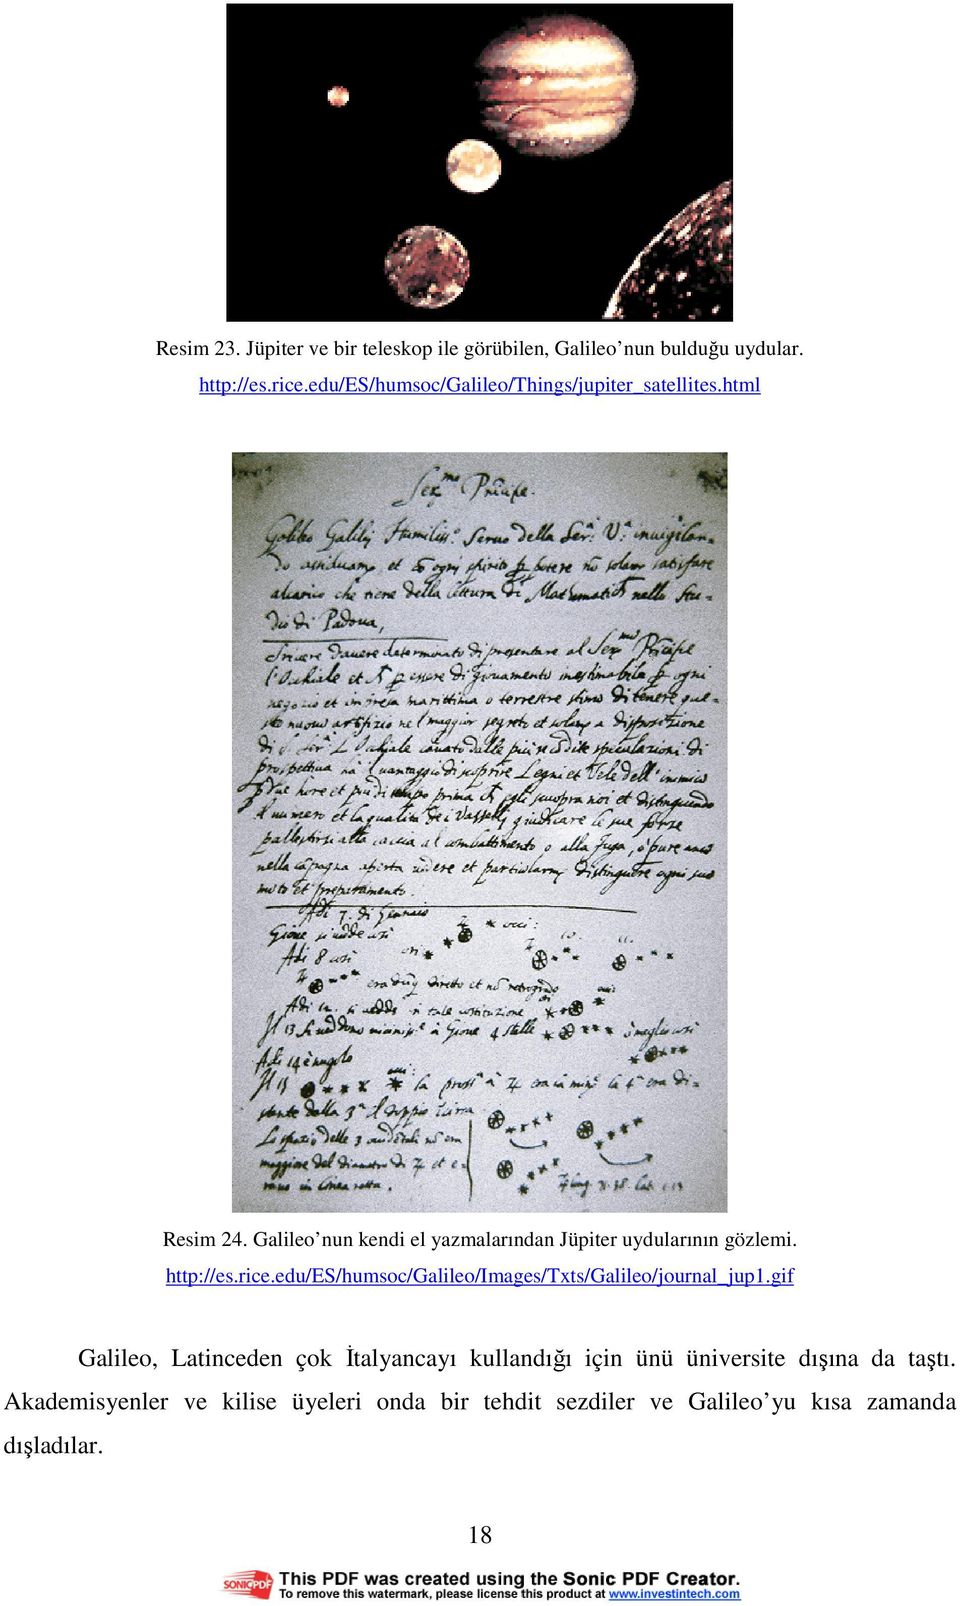 Galileo nun kendi el yazmalarından Jüpiter uydularının gözlemi. http://es.rice.